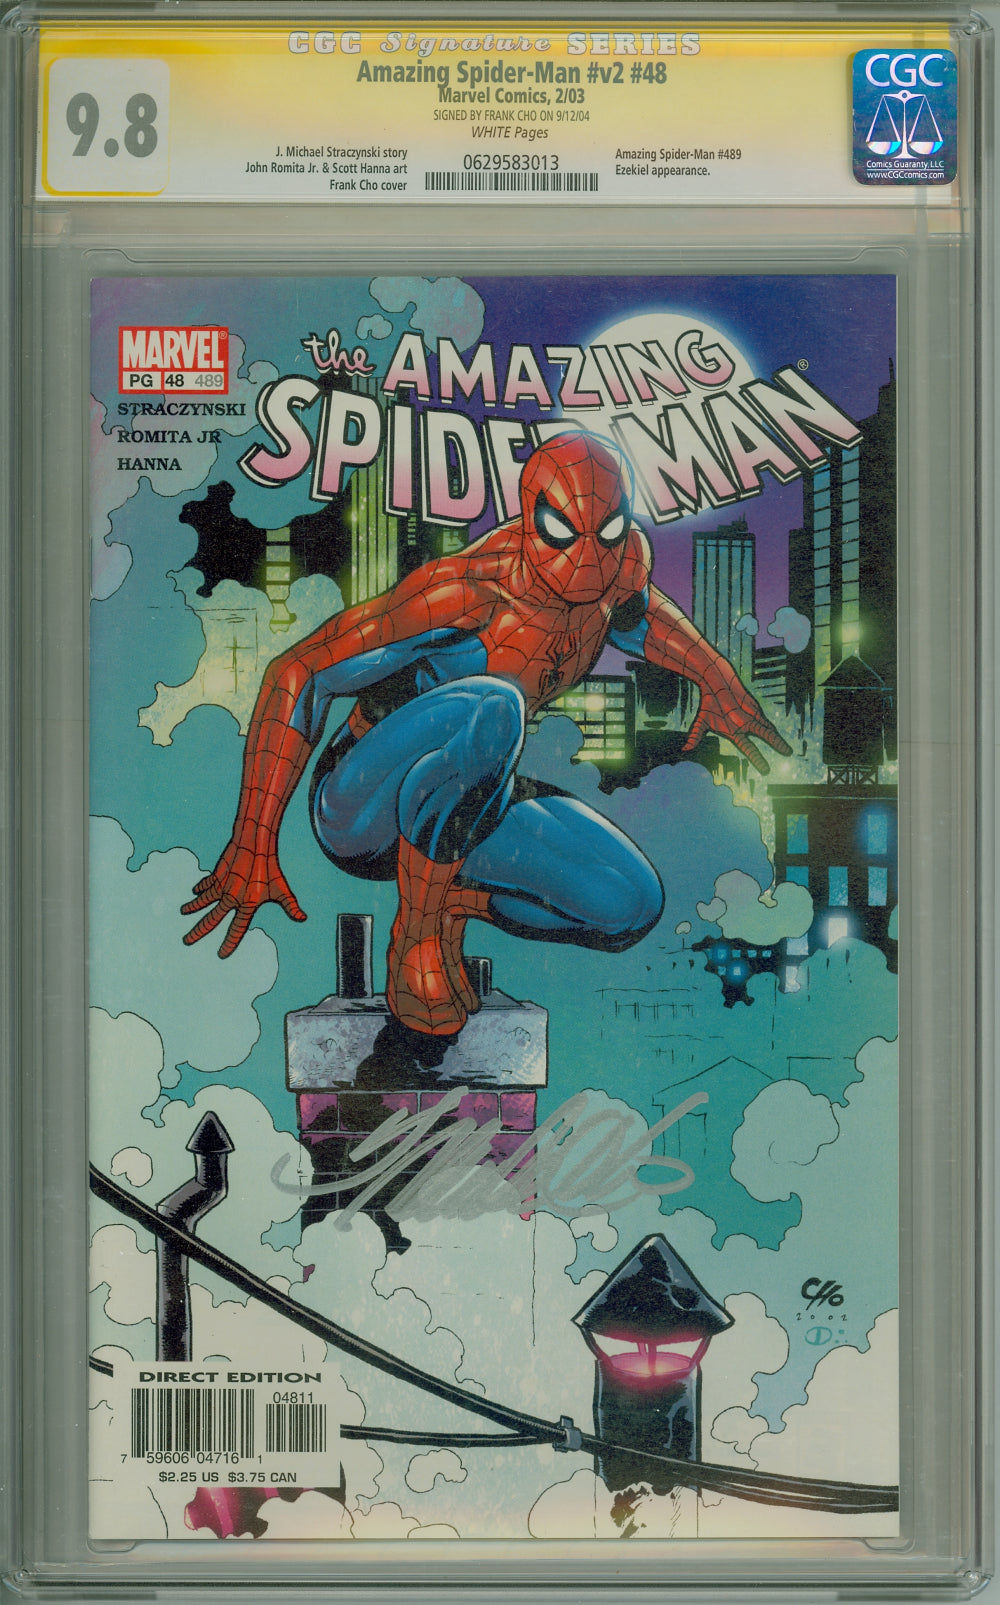 Amazing Spider-Man #v3 #48 (489) CGC 9.8 SS  Frank Cho